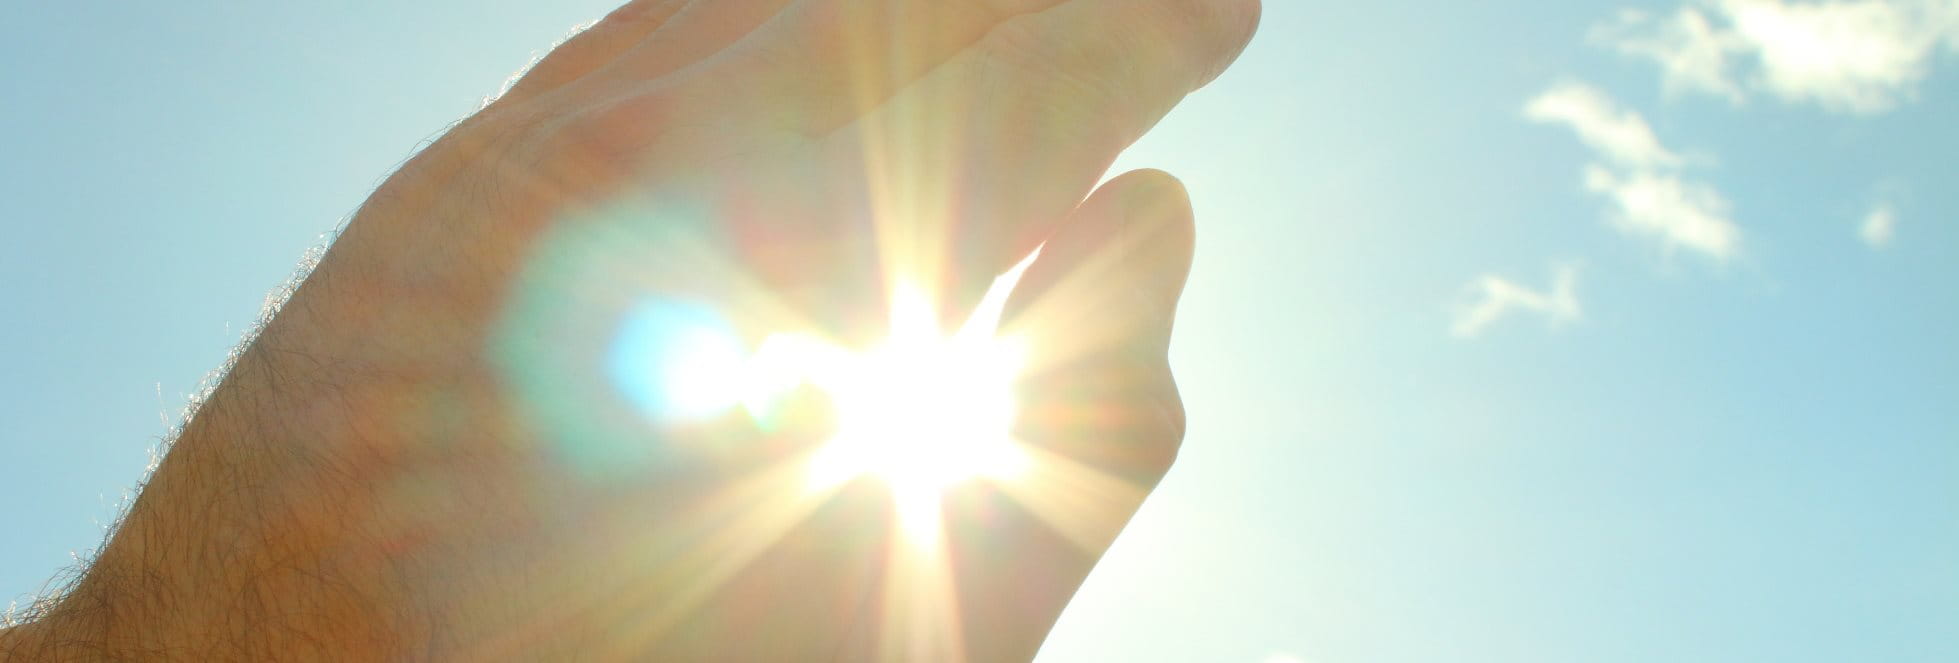 Übermäßige UV-Strahlung auf der Haut kann aktinische Keratose auslösen